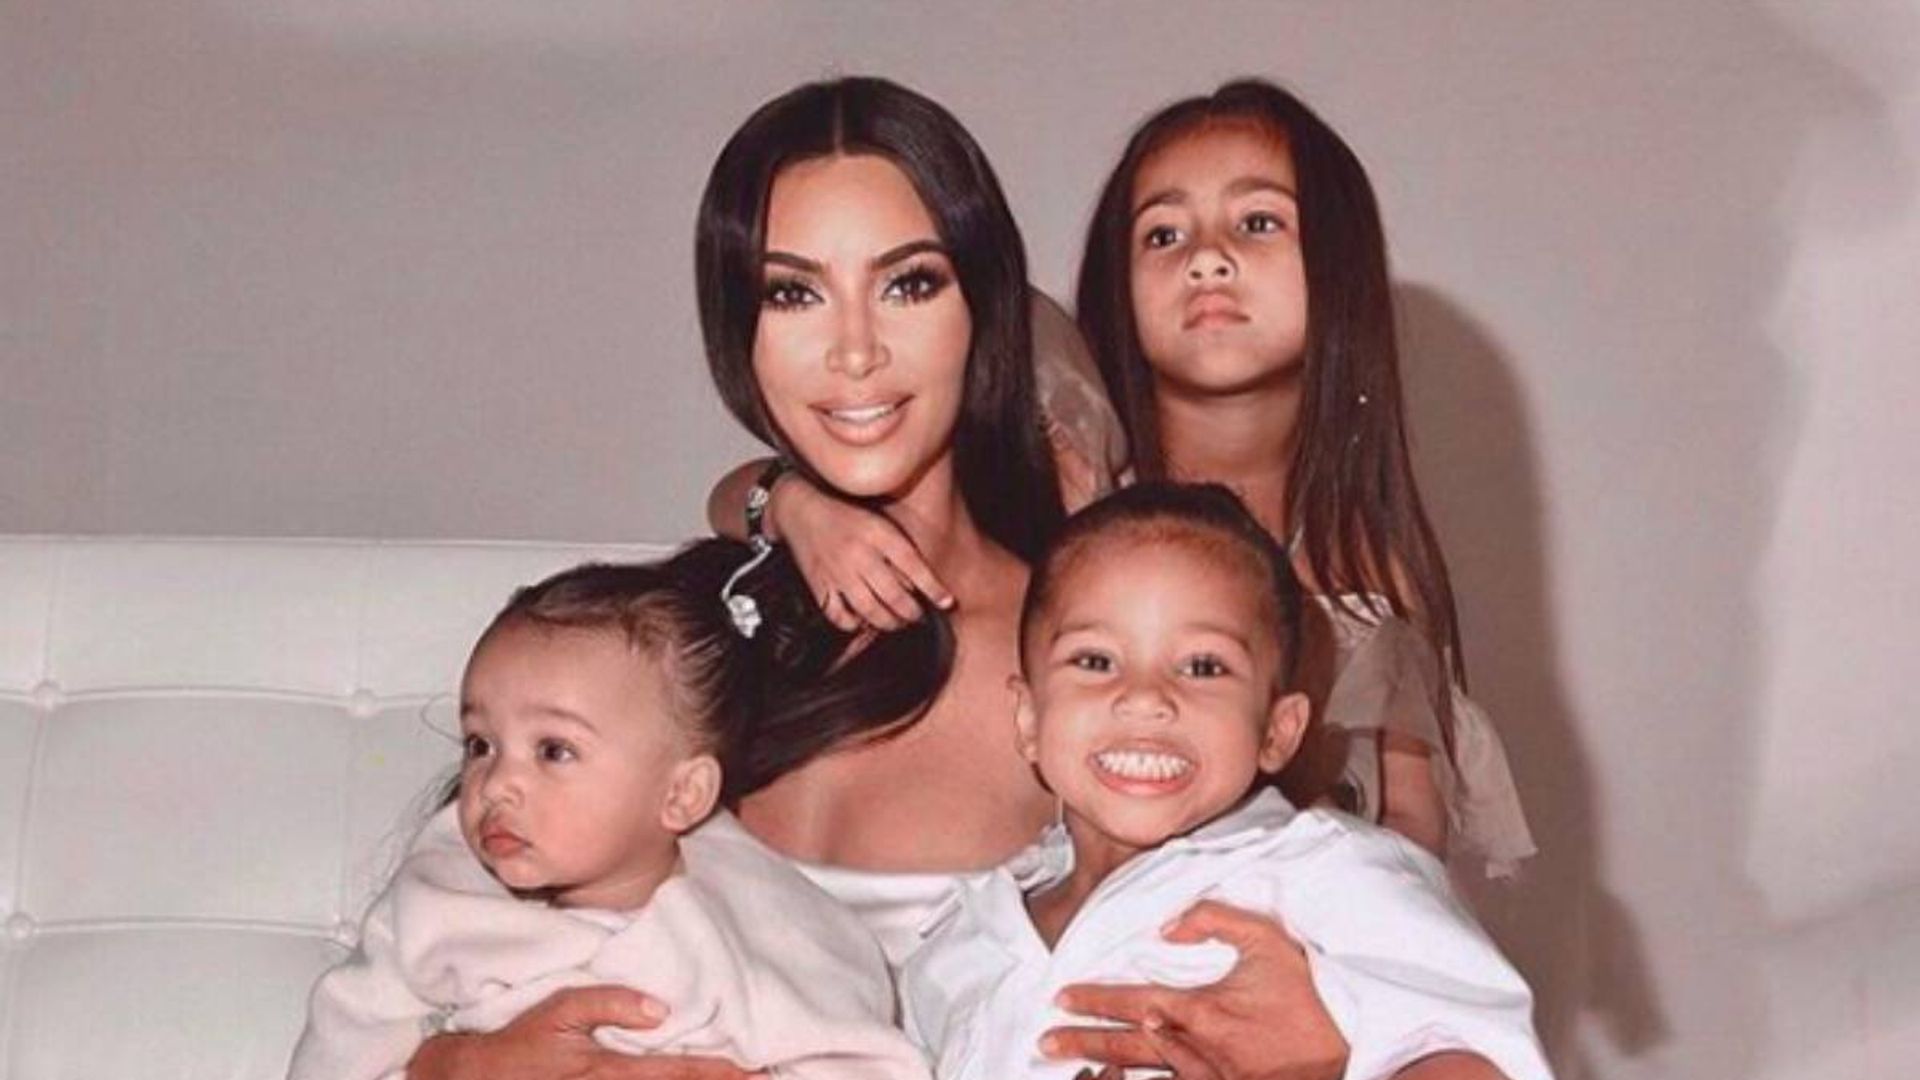 Kim Kardashian suffers Christmas home disaster with four kids